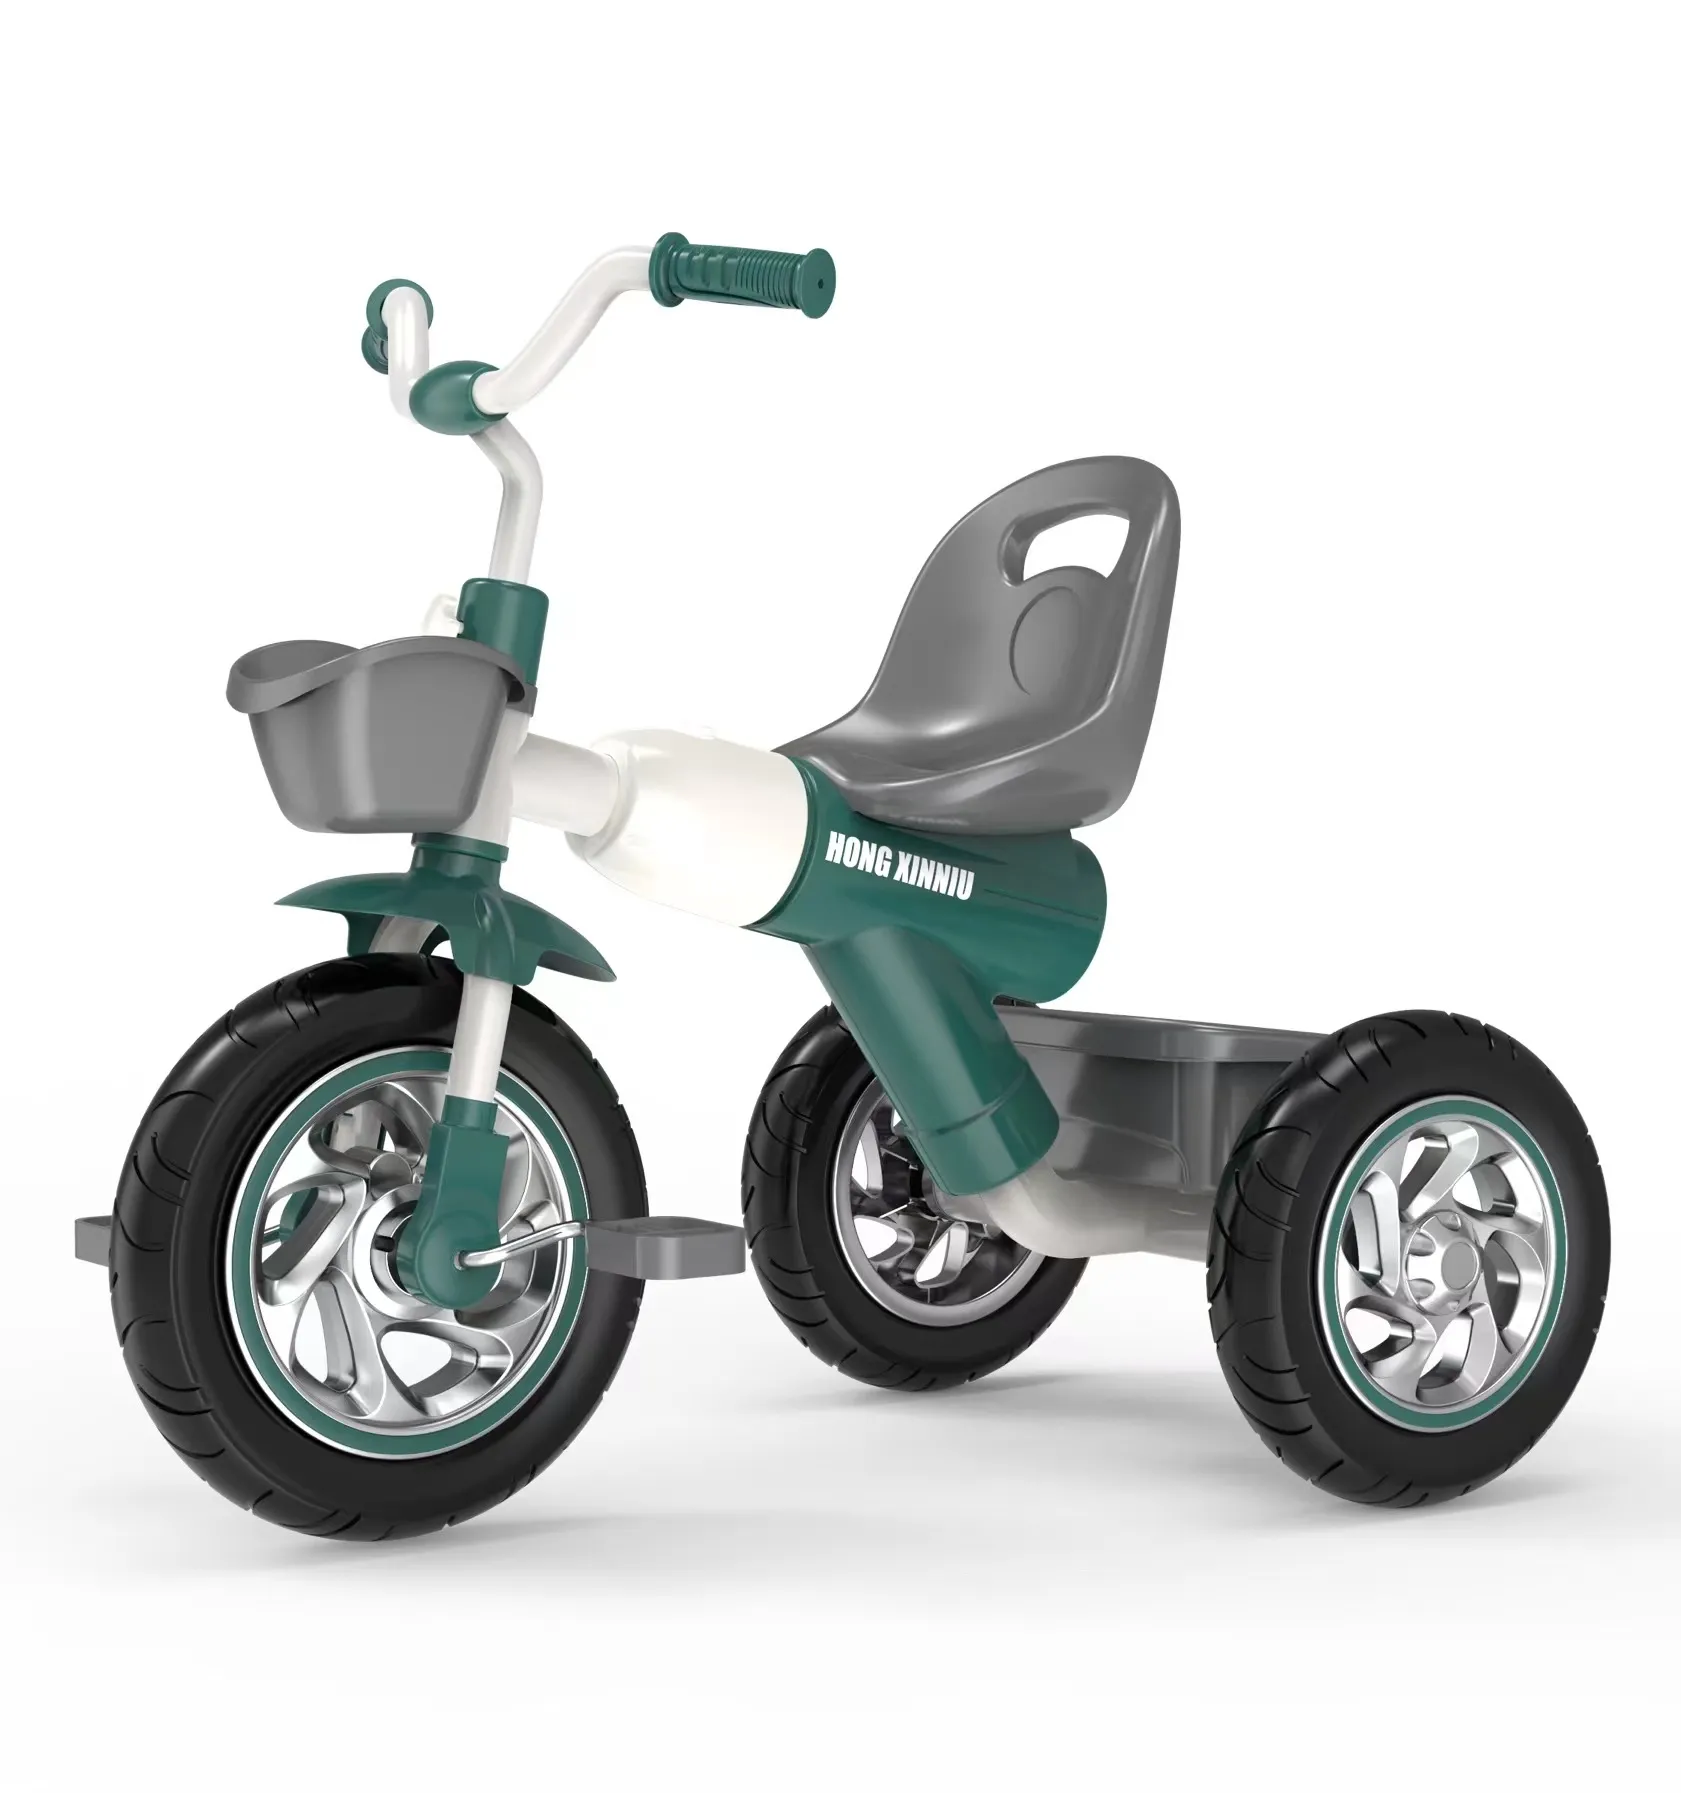 حار بيع جديد نموذج بسيط الصين نمط جميل 3 عجلة لعبة دراجة طفل دراجة أطفال ثلاثية على الانترنت التسوق ل 2-8 سنوات الأطفال